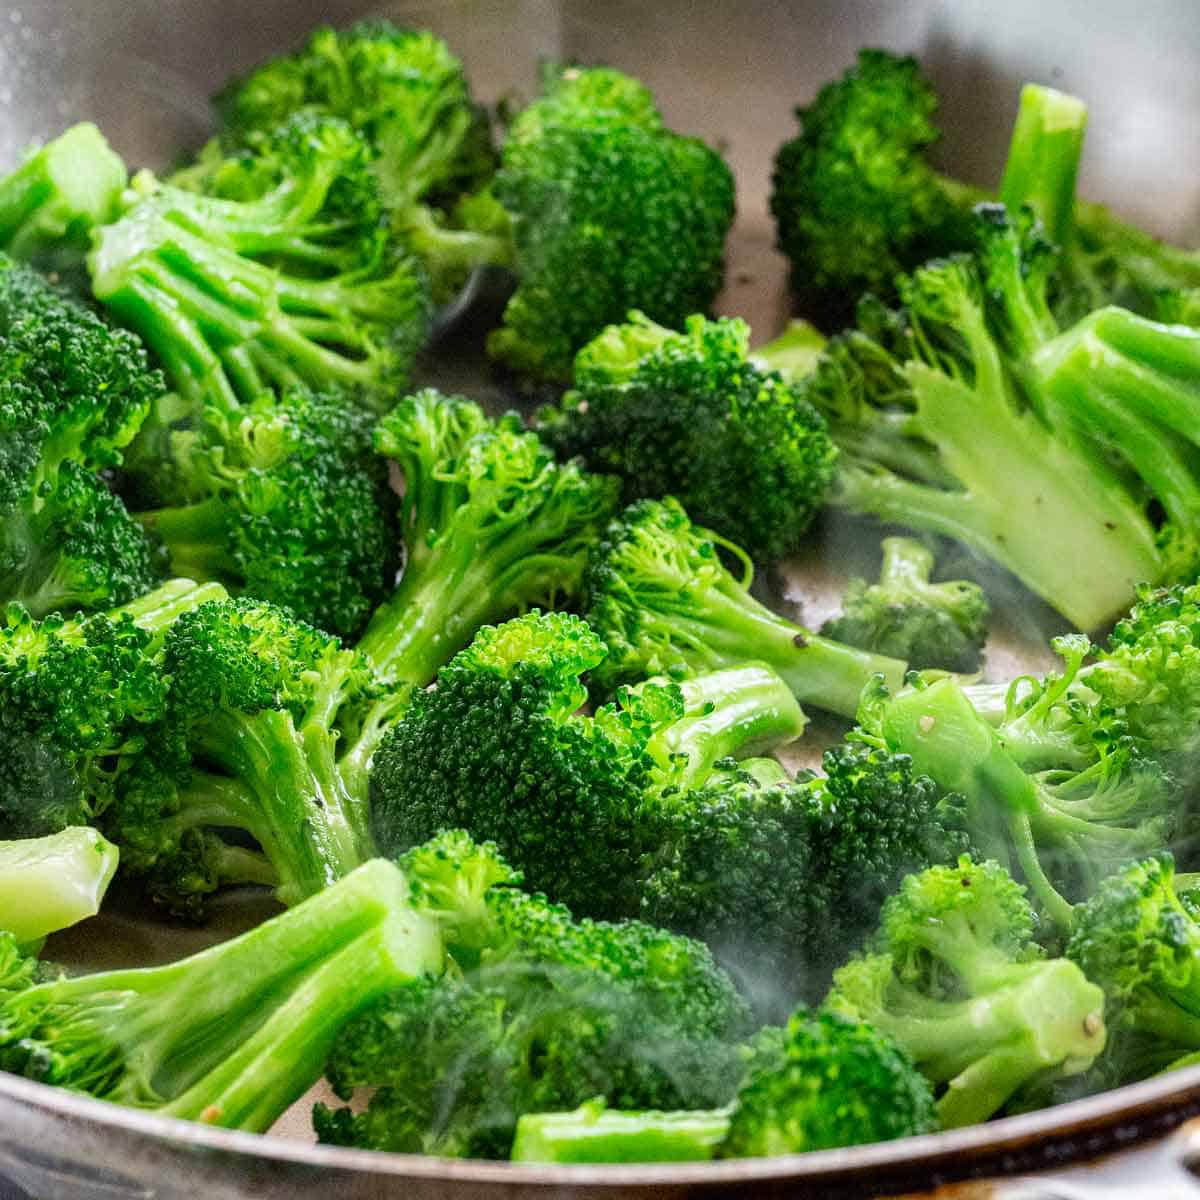 Những người ăn cần tây và bông cải xanh mà cảm thấy đắng thì có ít nguy cơ mắc Covid-19 hơn - Ảnh 1.